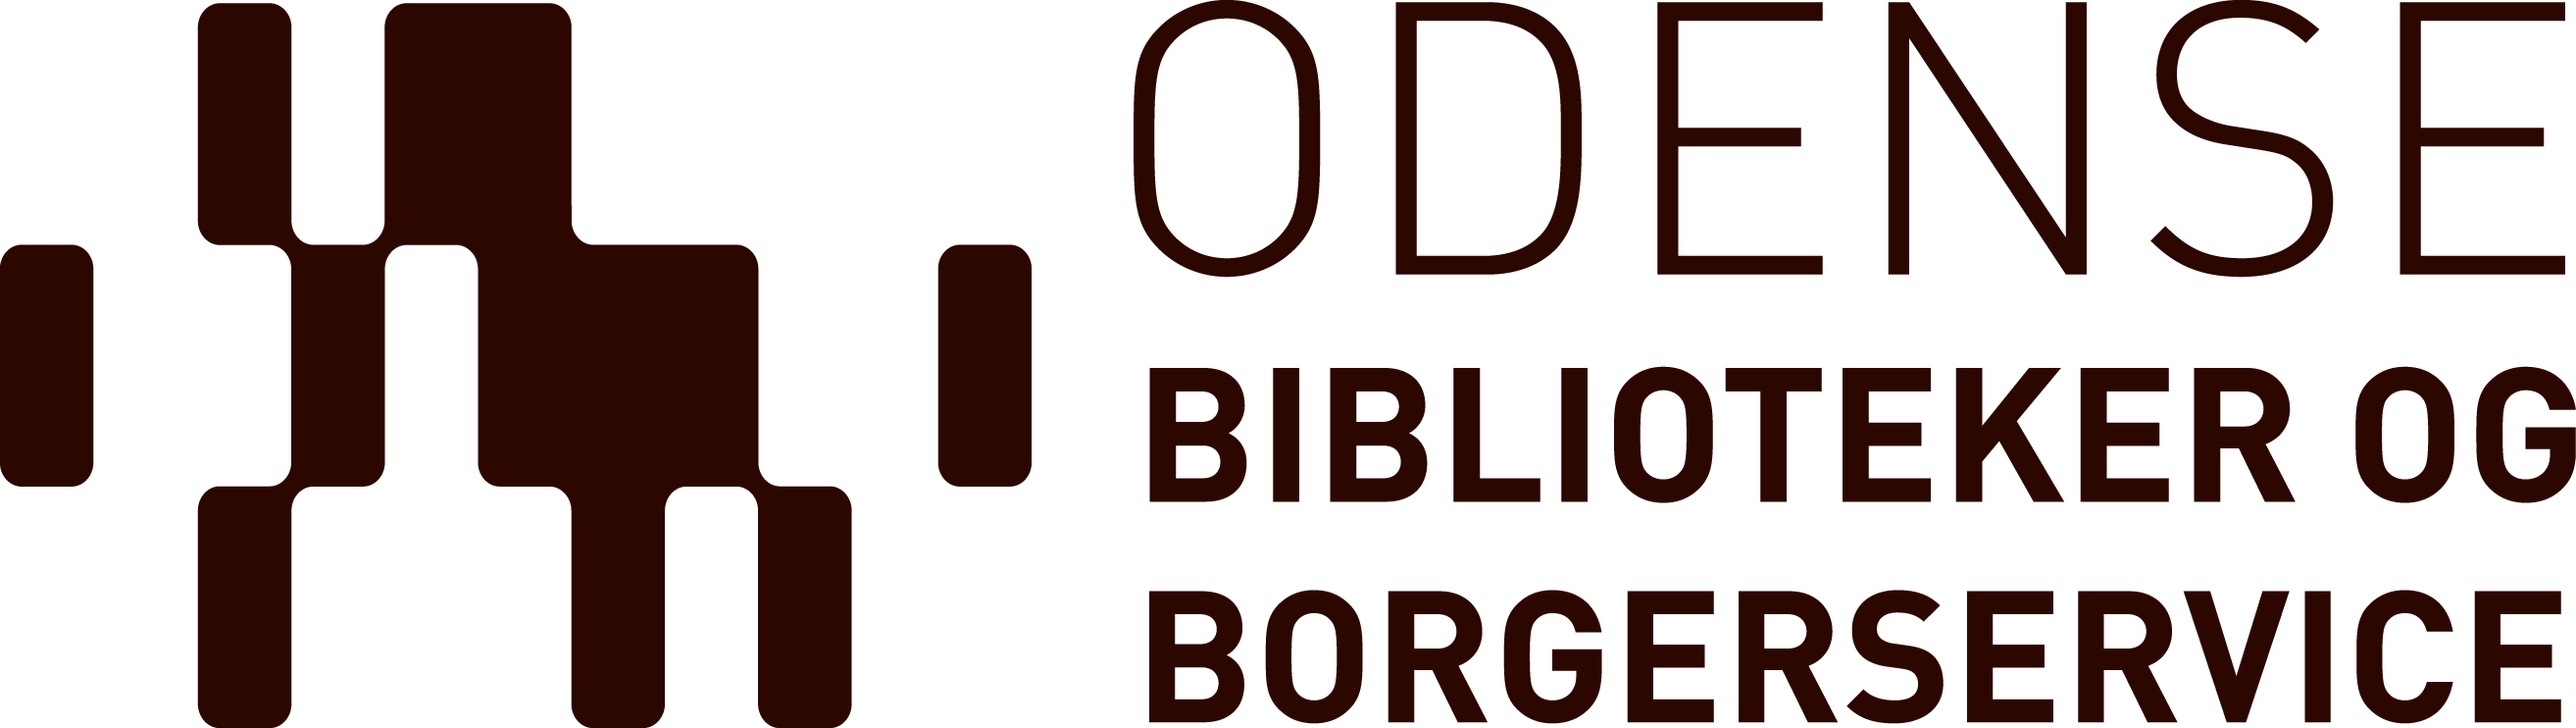 Hovedbiblioteket i Odense Biblioteker og Borgerservice